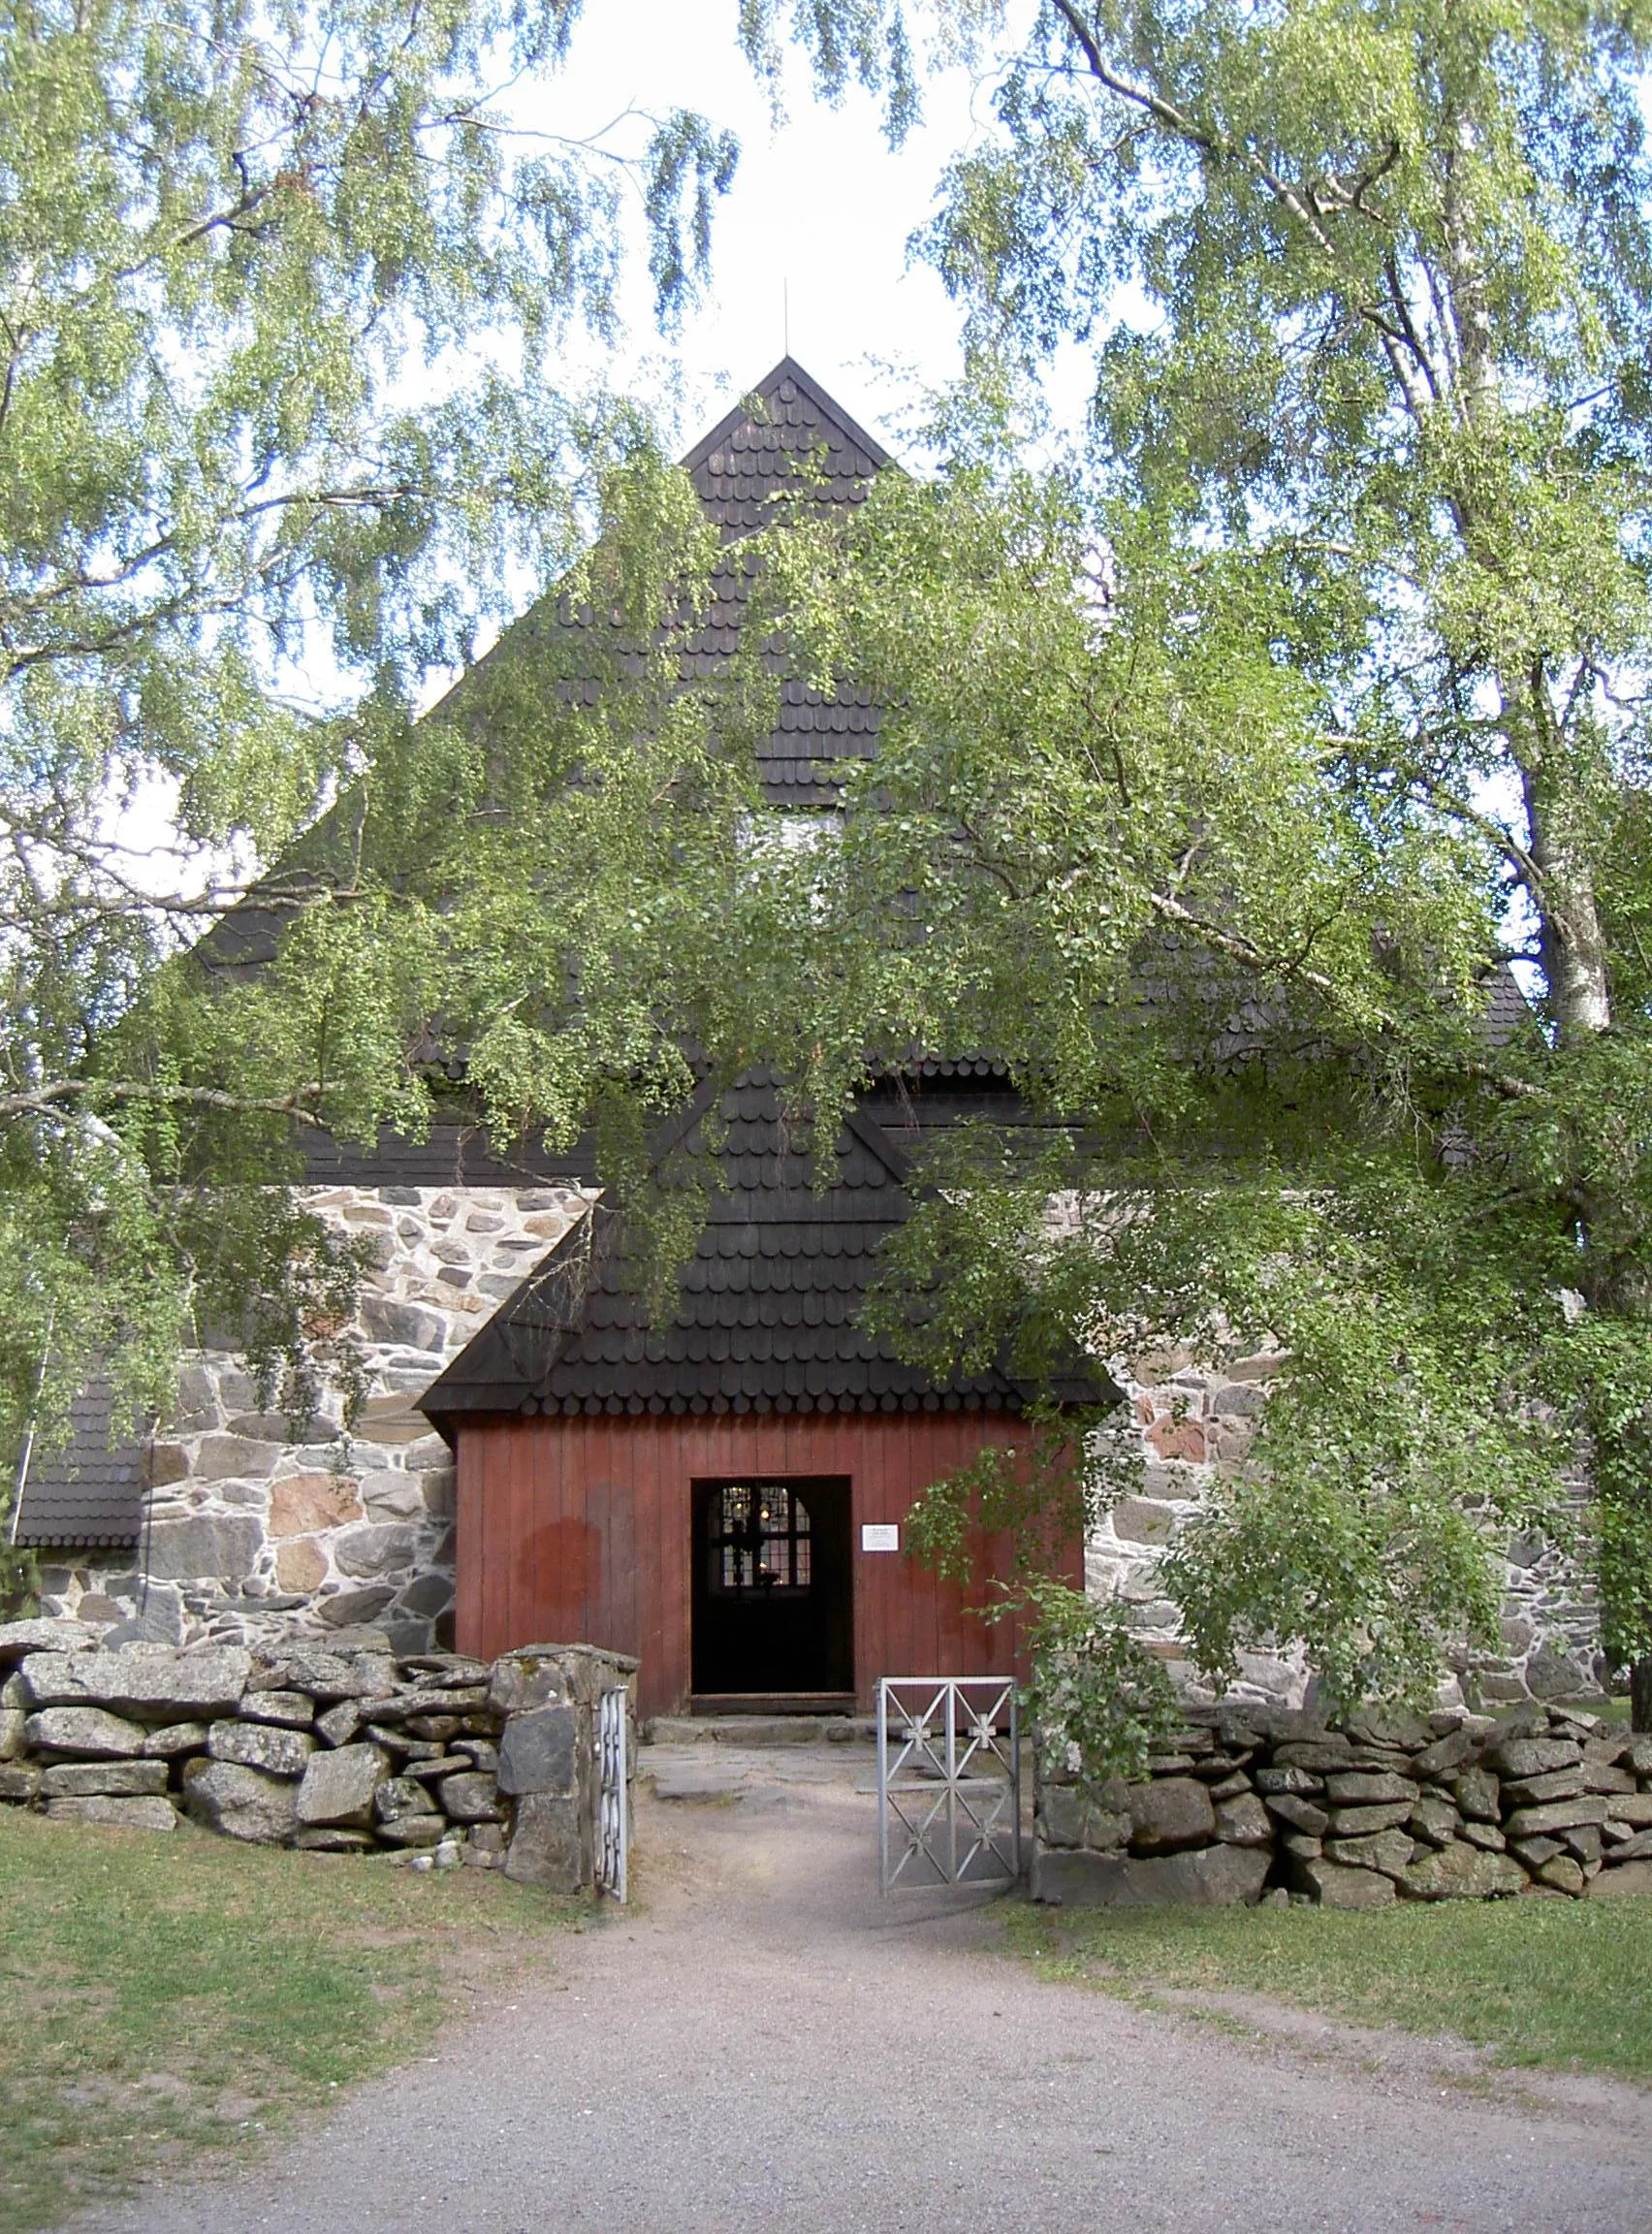 Photo showing: Old Church of Messukylä (Messukylän vanha kirkko) in Tamperen, Finland.